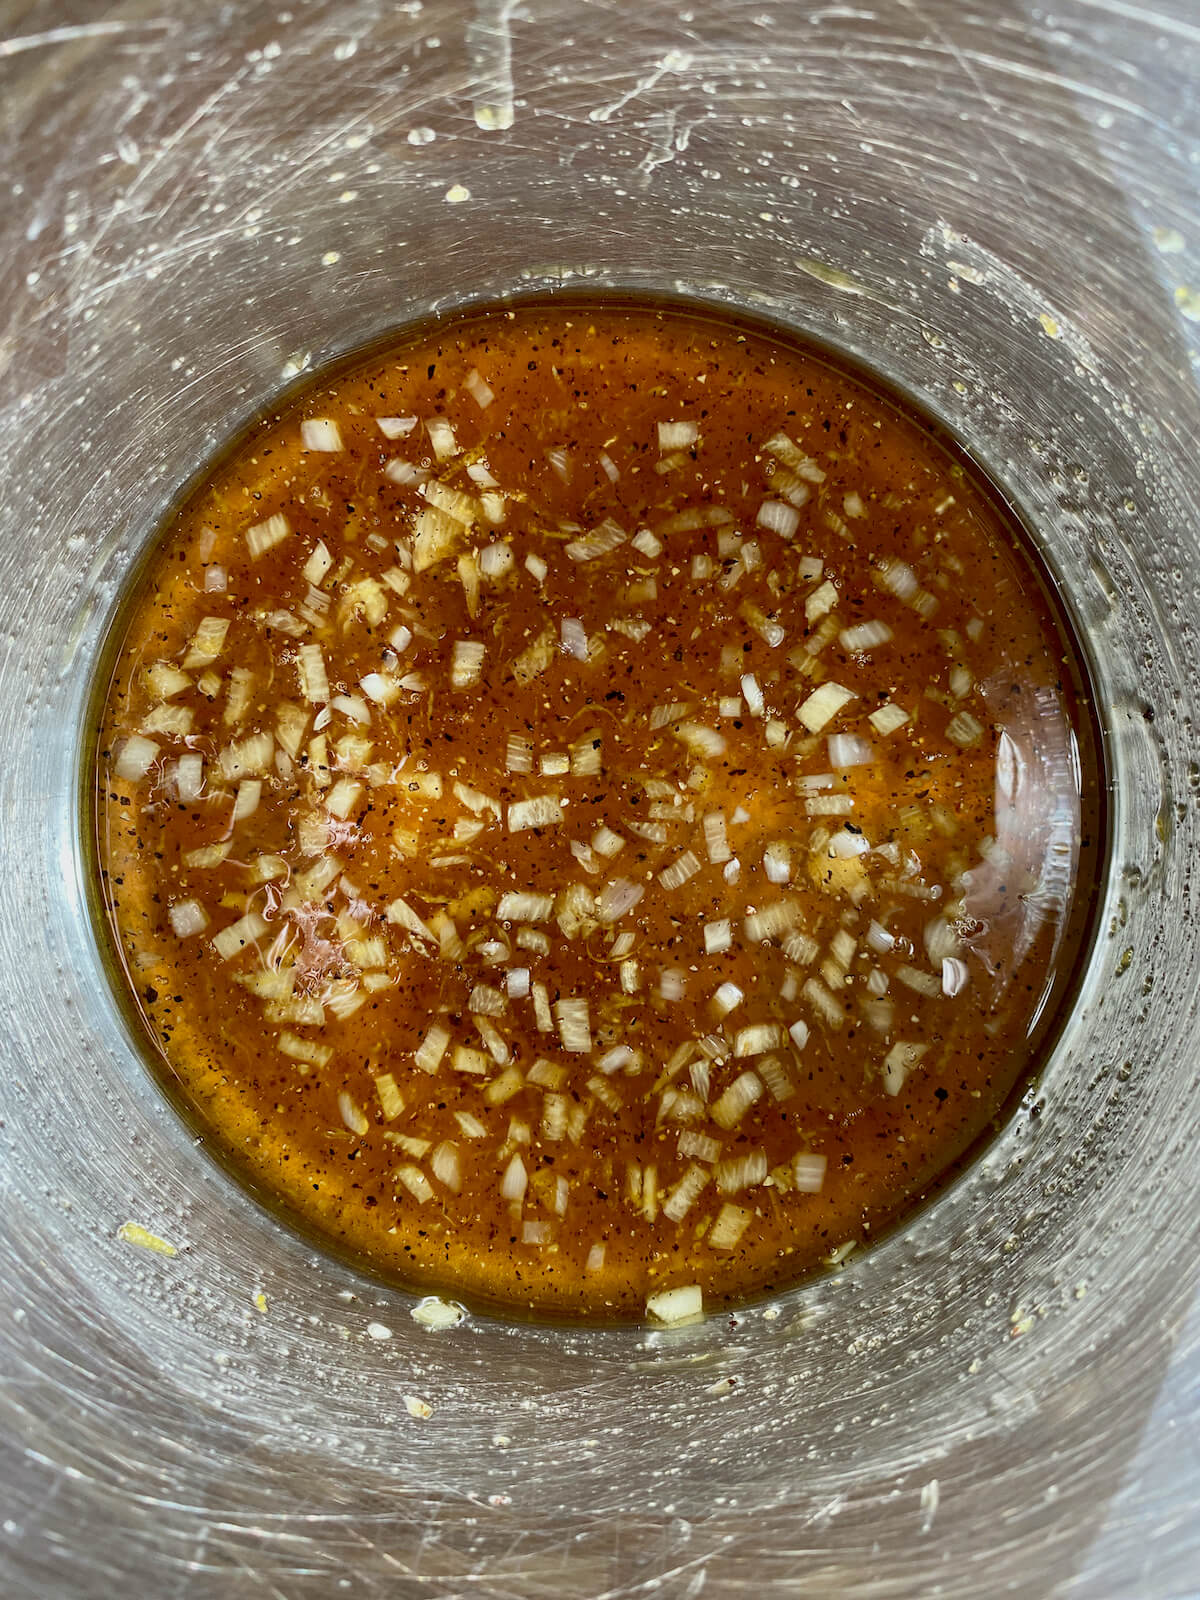 Honey lemon pepper glaze simmering in a stainless steel pot.